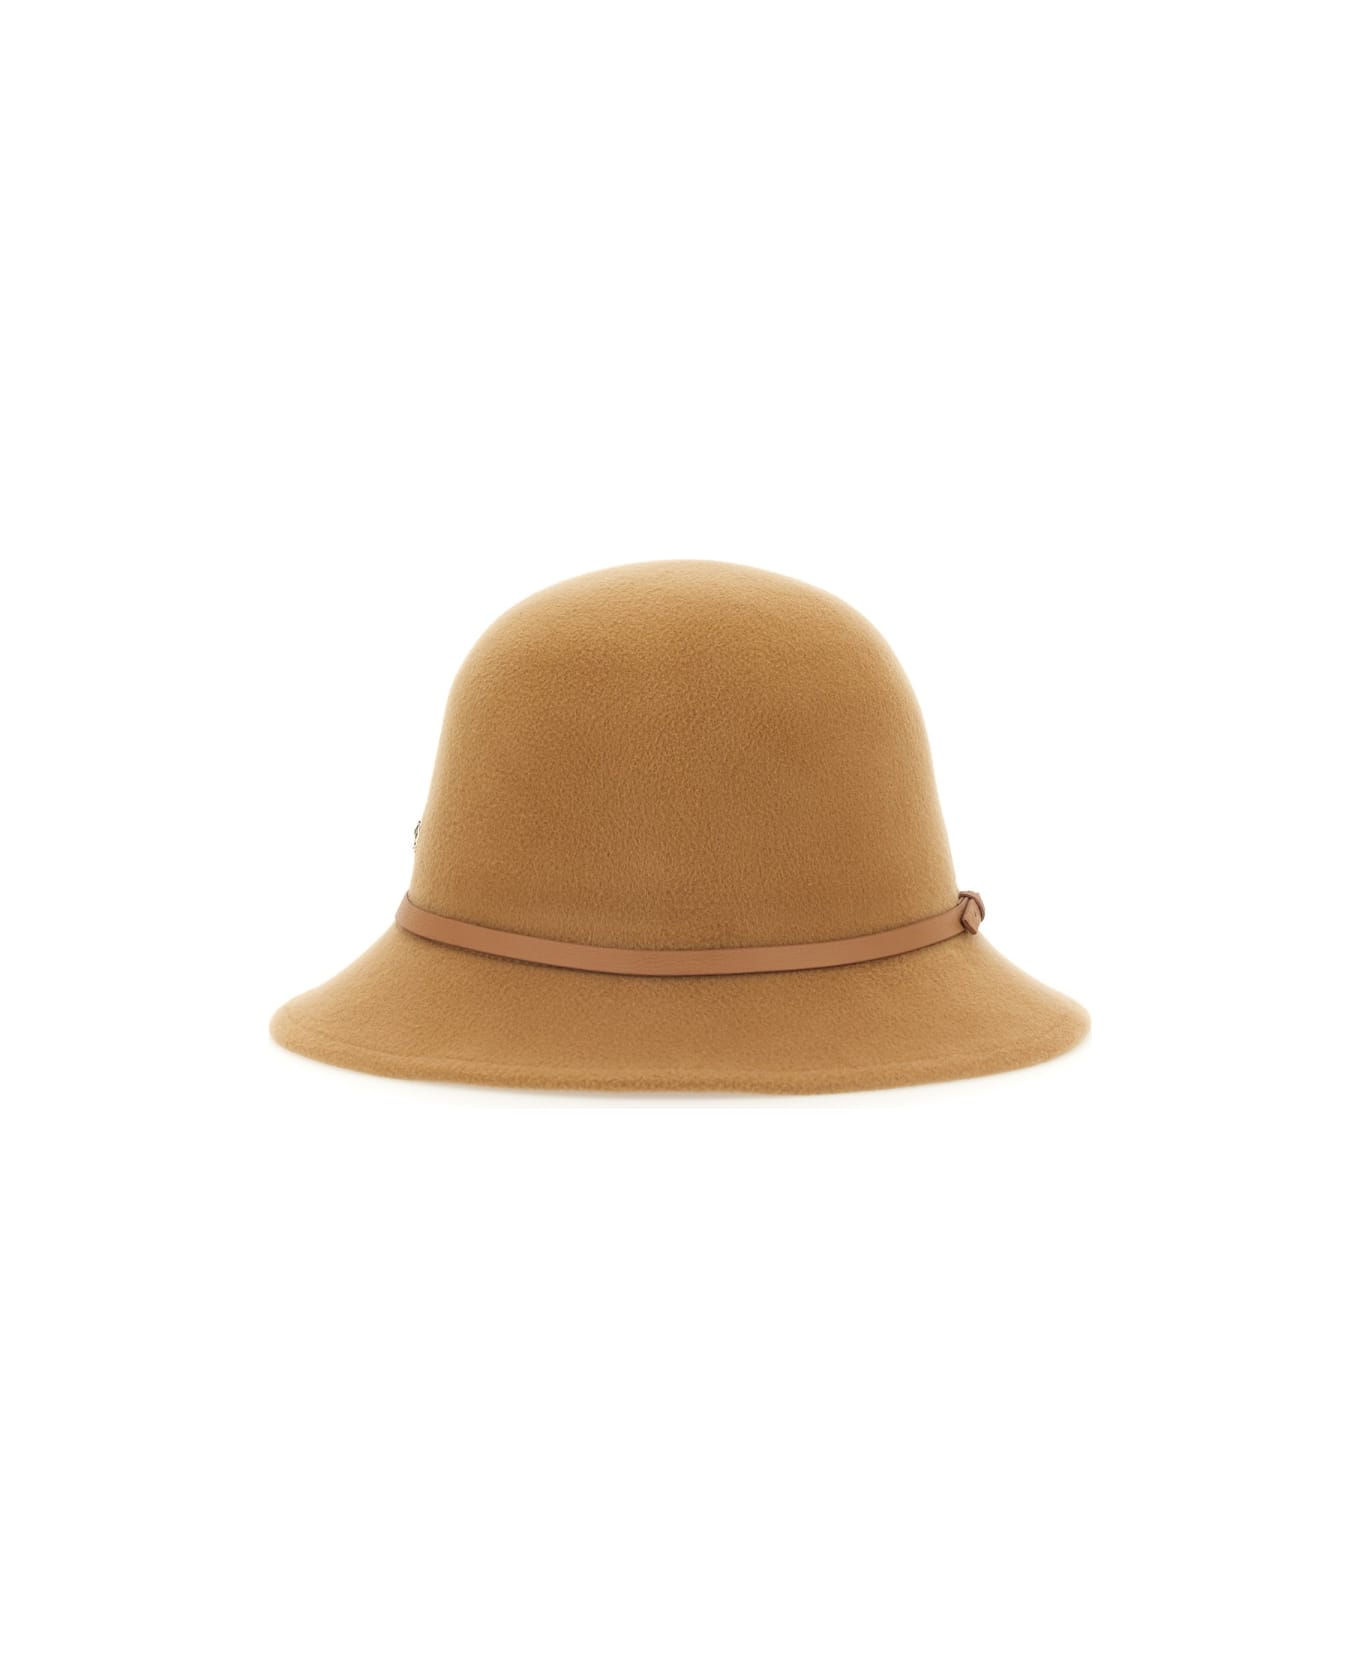 Helen Kaminski Bucket Hat - BEIGE 帽子